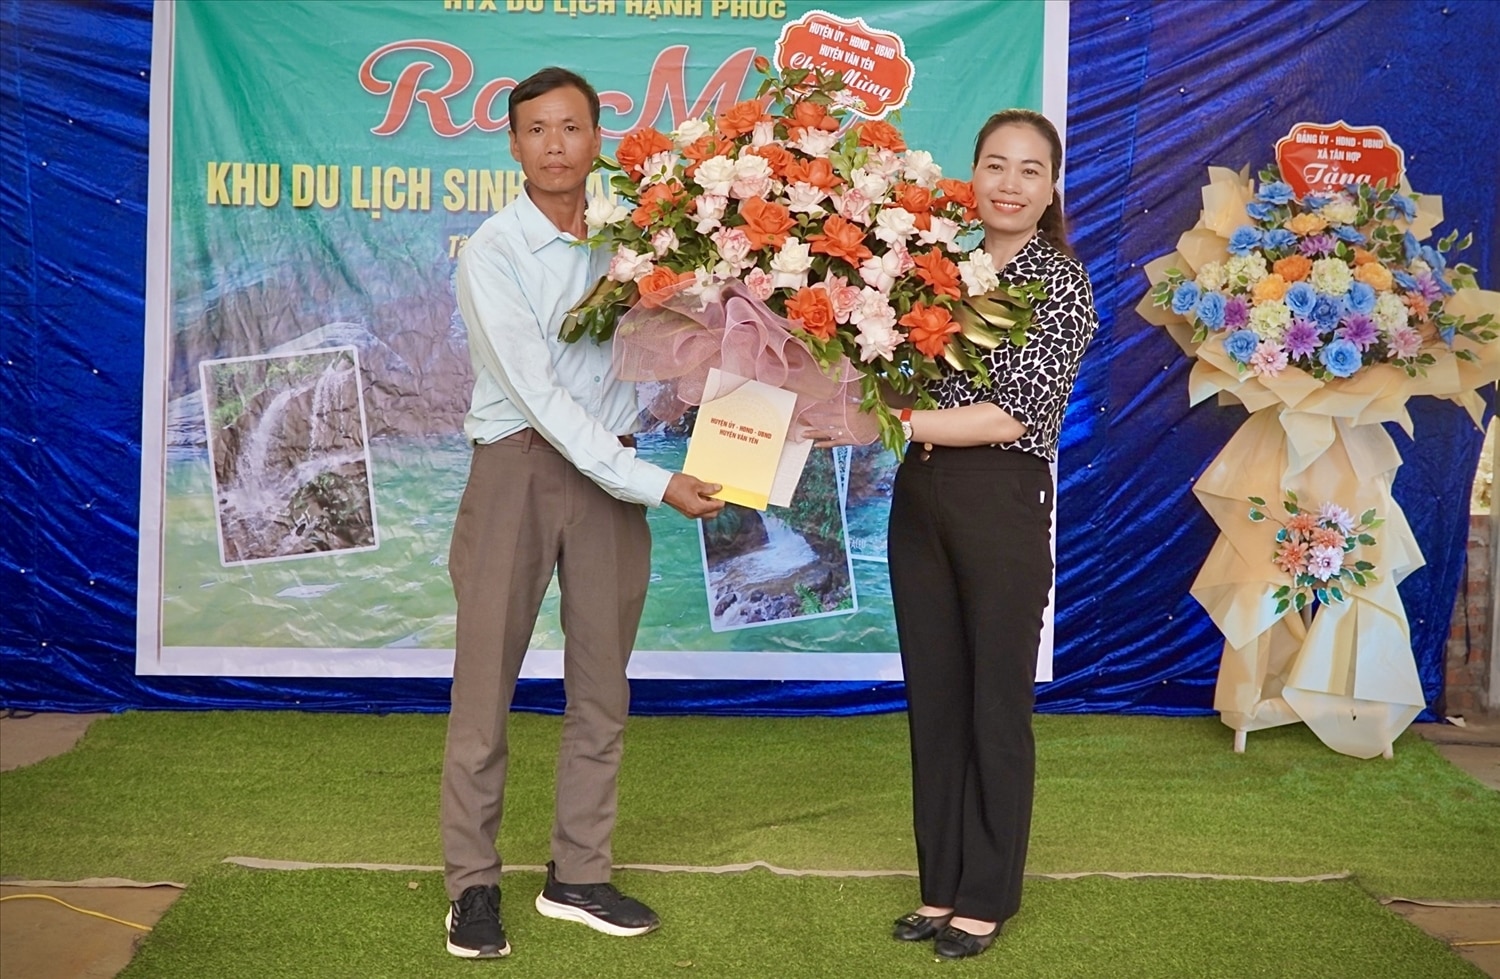 Phó Chủ tịch UBND huyện Văn Yên Lã Thị Liền tặng hoa chúc mừng HTX Du lịch Hạnh Phúc nhân dịp ra mắt